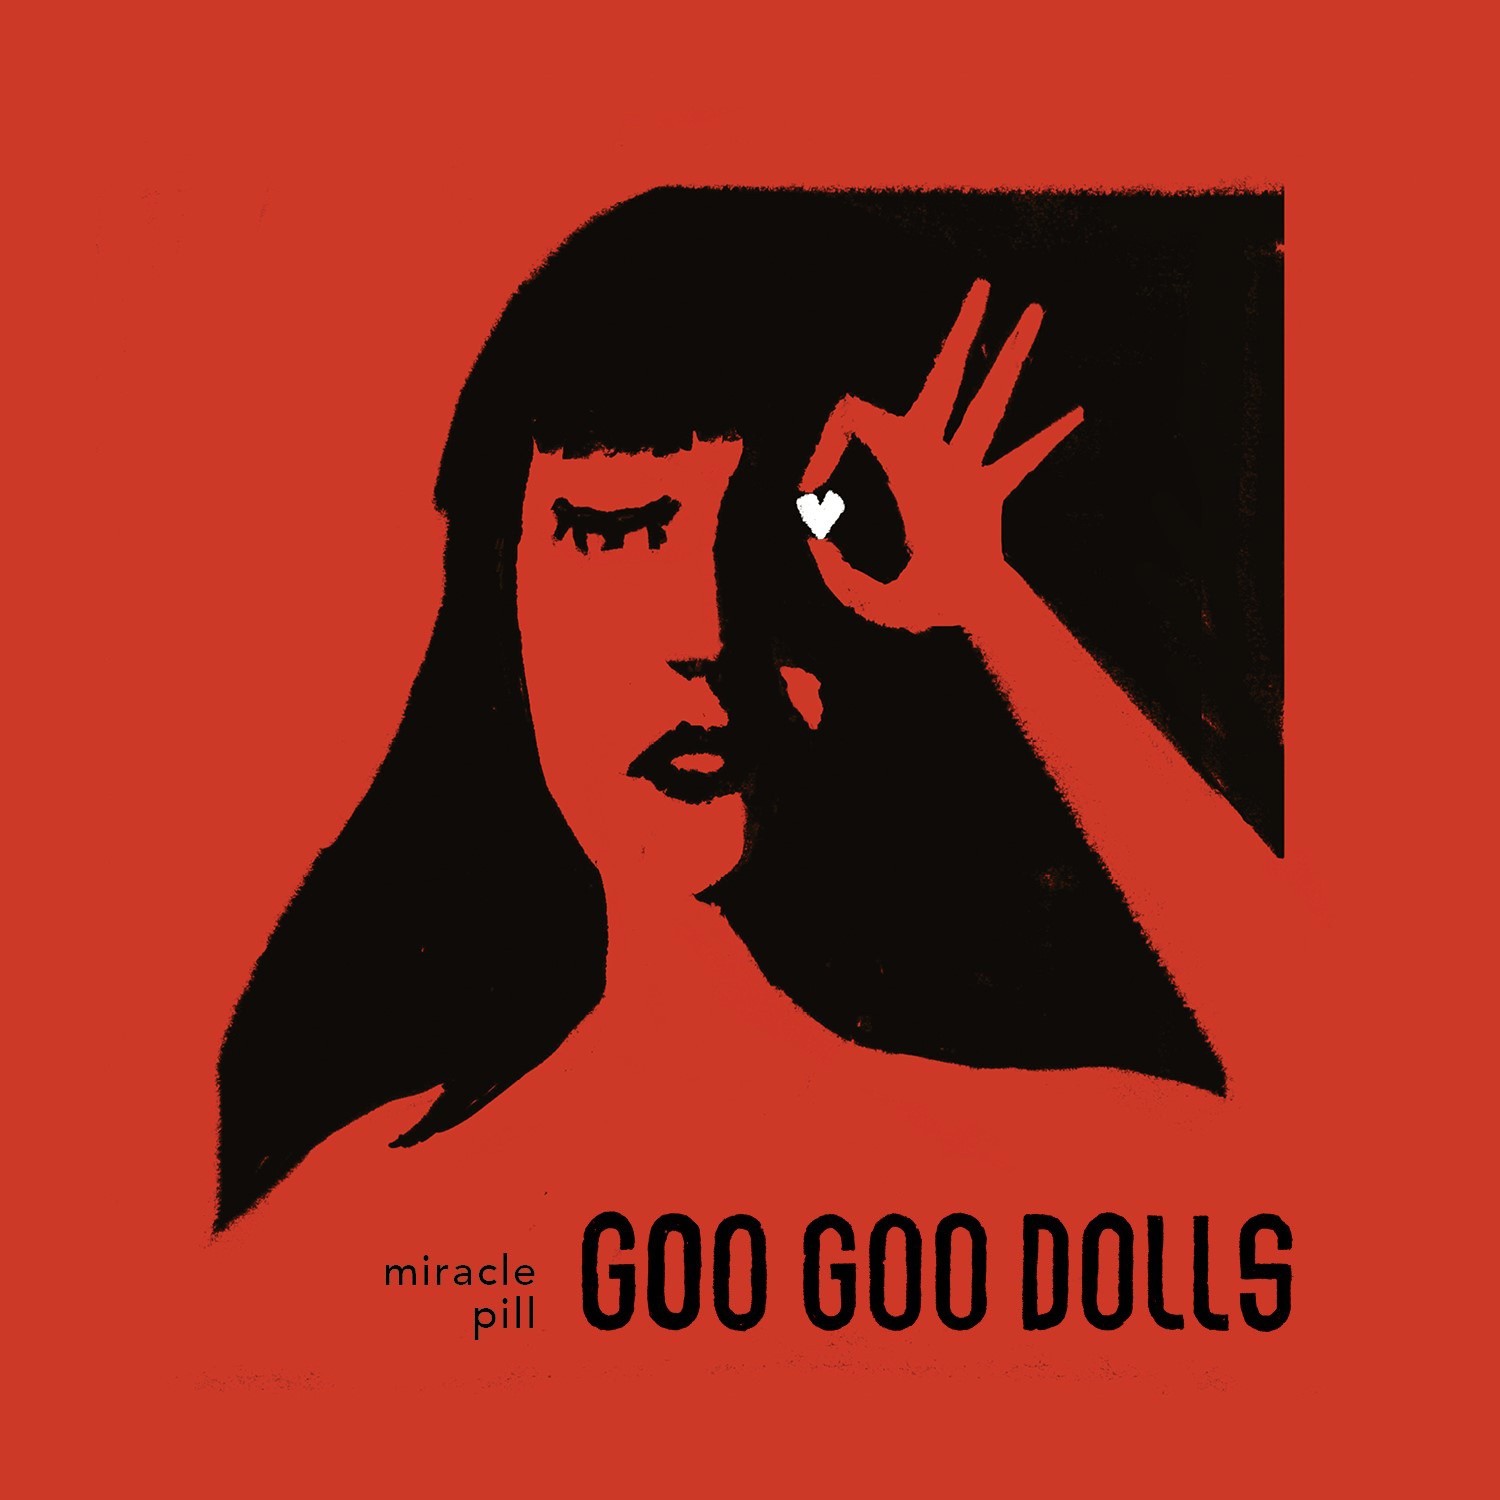 9|The Goo Goo Dolls 音乐合集